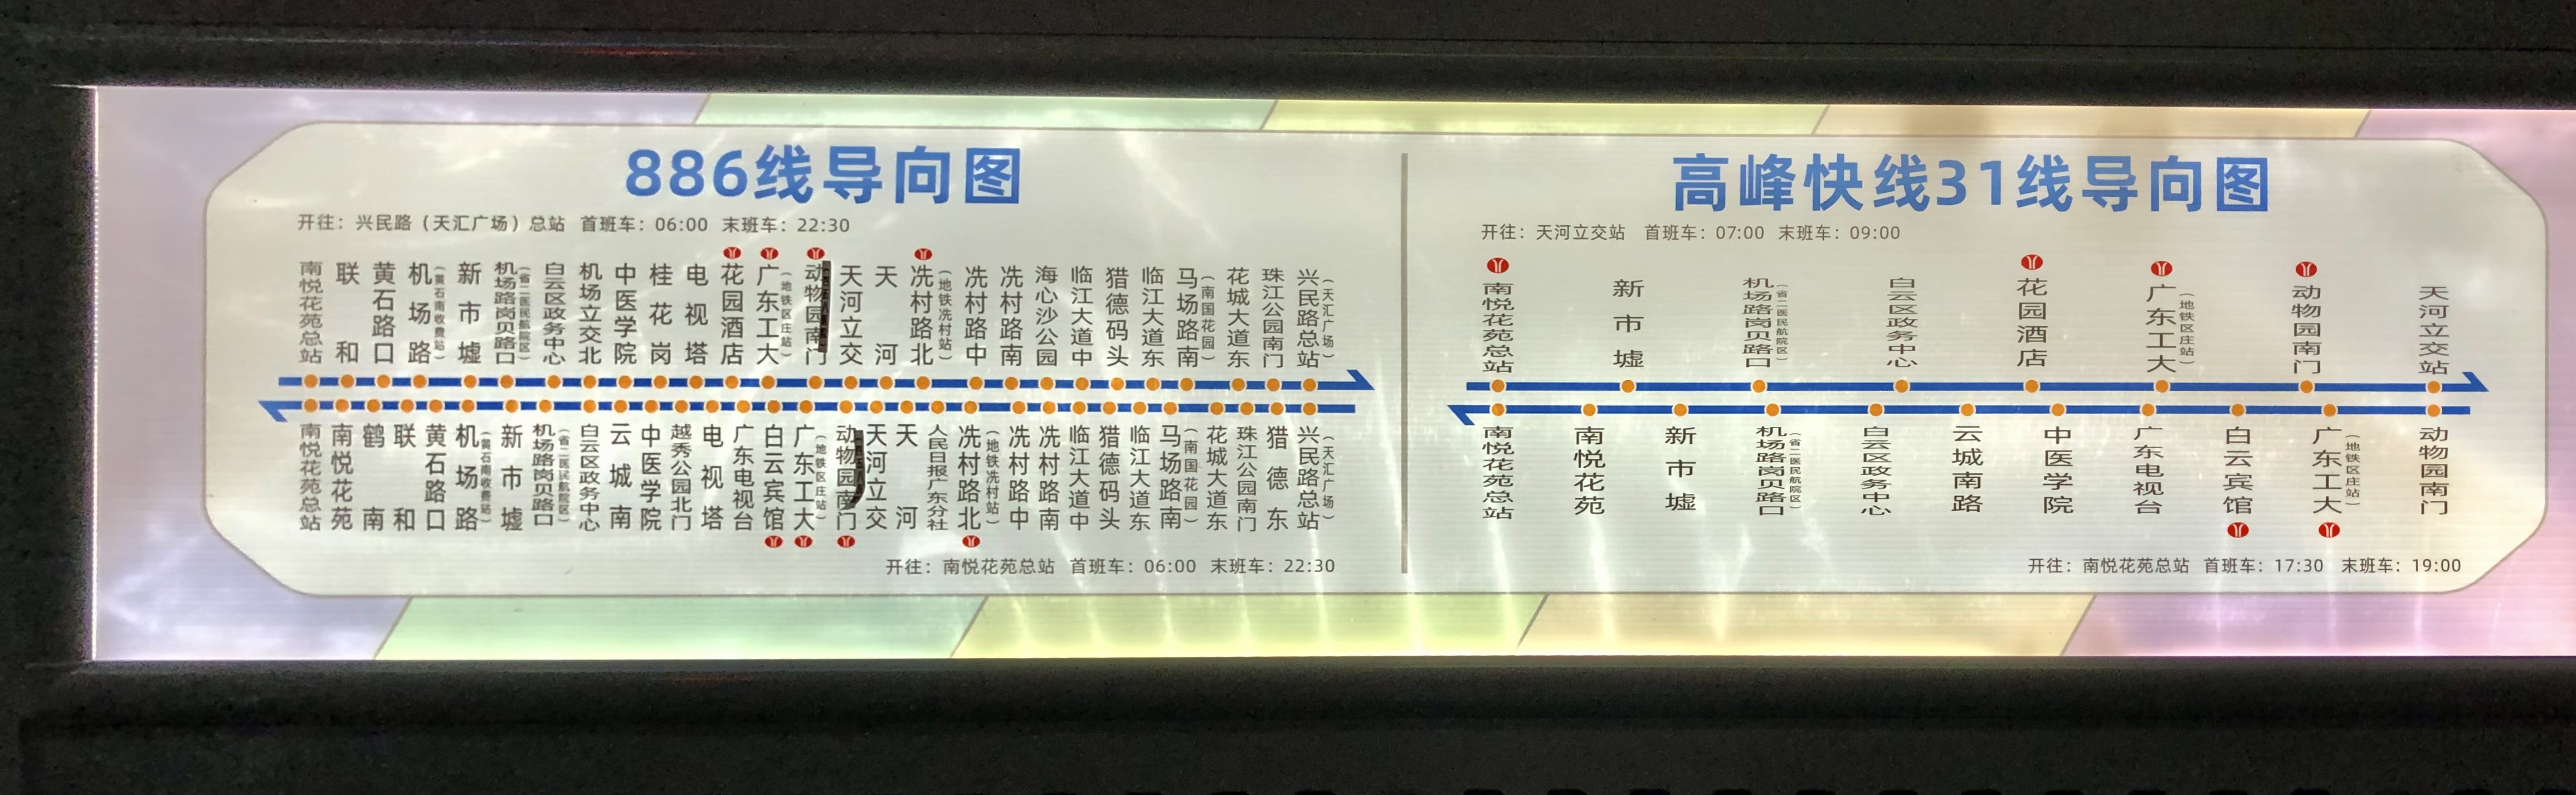 广州高峰快线31公交车路线